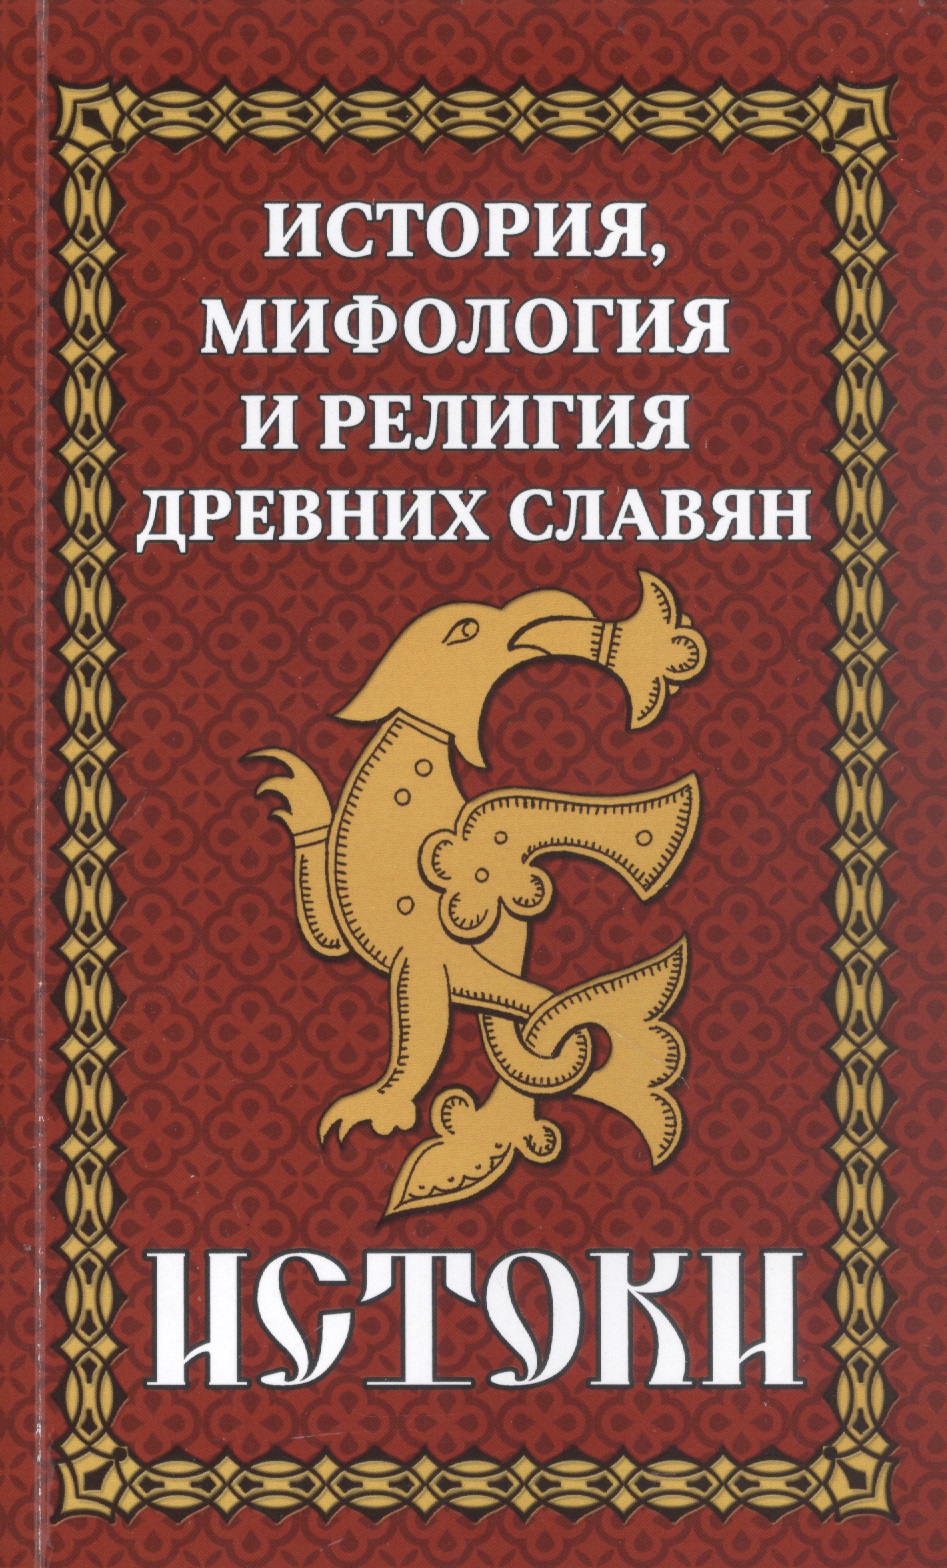 История, мифология и религия древних славян. Истоки цена и фото